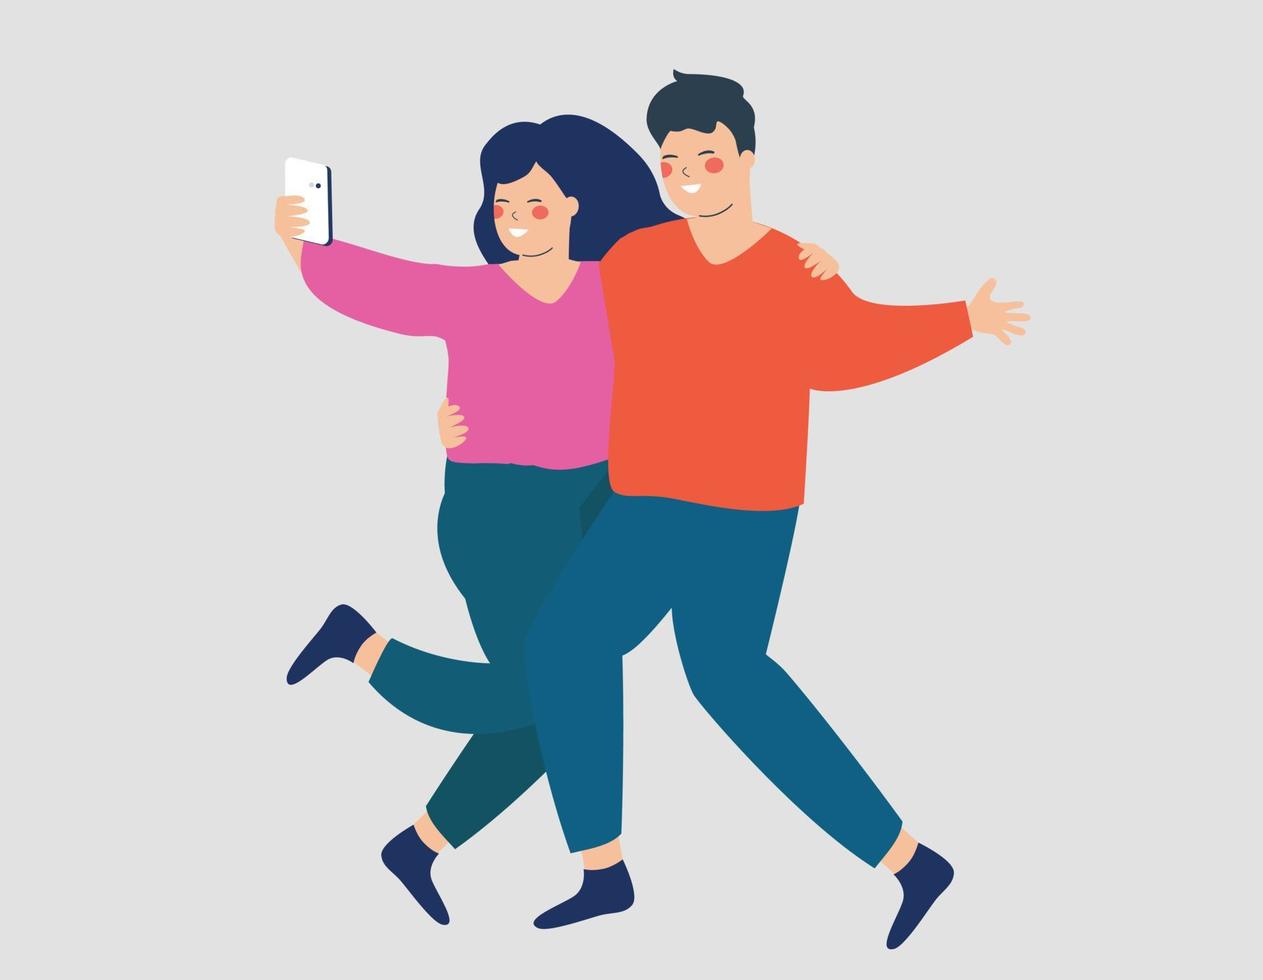 la joven abraza a su hombre por tomarse una selfie. una pareja feliz se abraza y tiene una videollamada. concepto de usabilidad móvil, amistad y tecnología. material vectorial vector